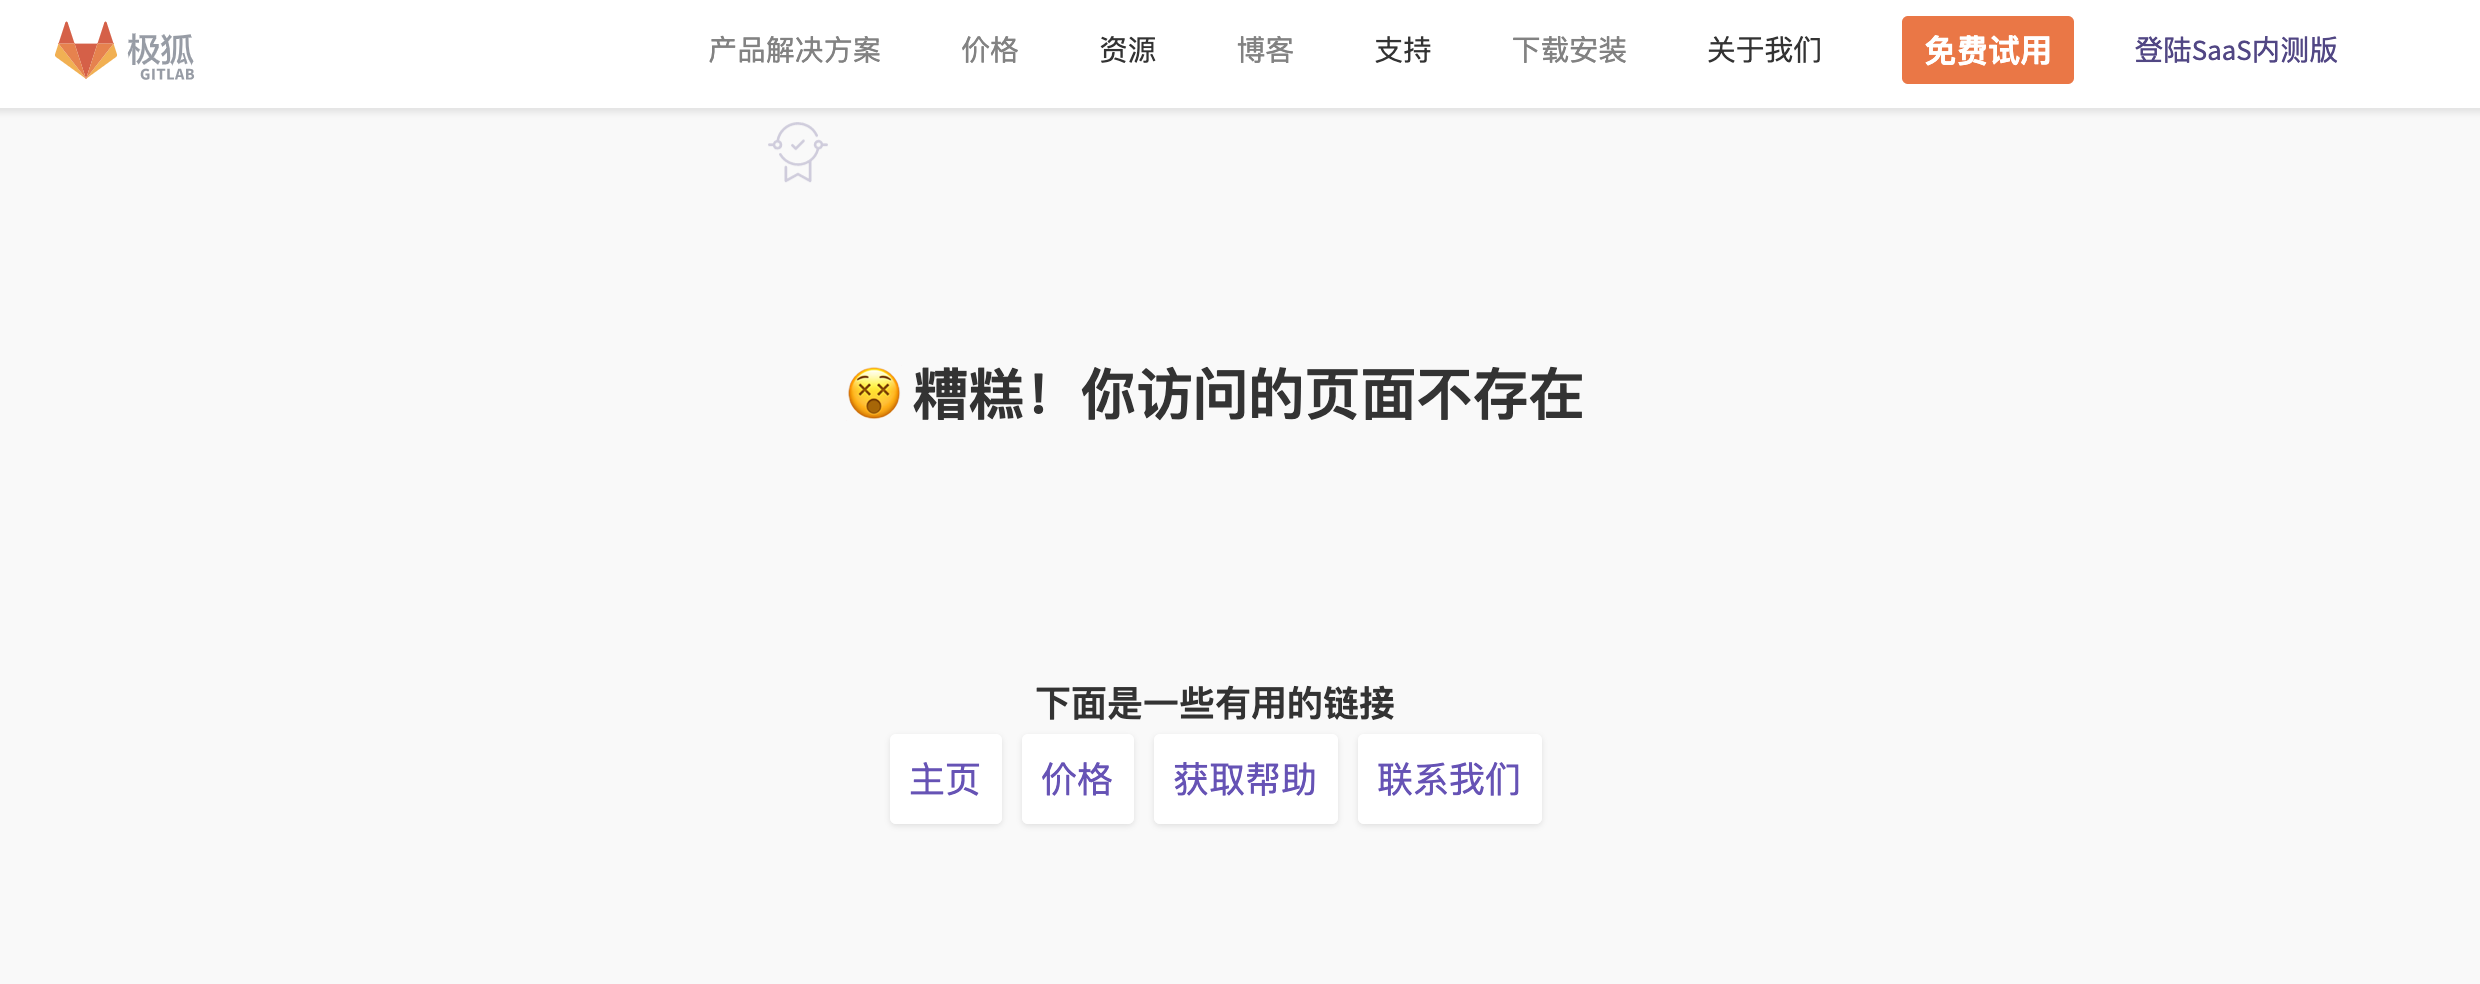 中国版 GitLab 似乎有些服务没有迁移过来